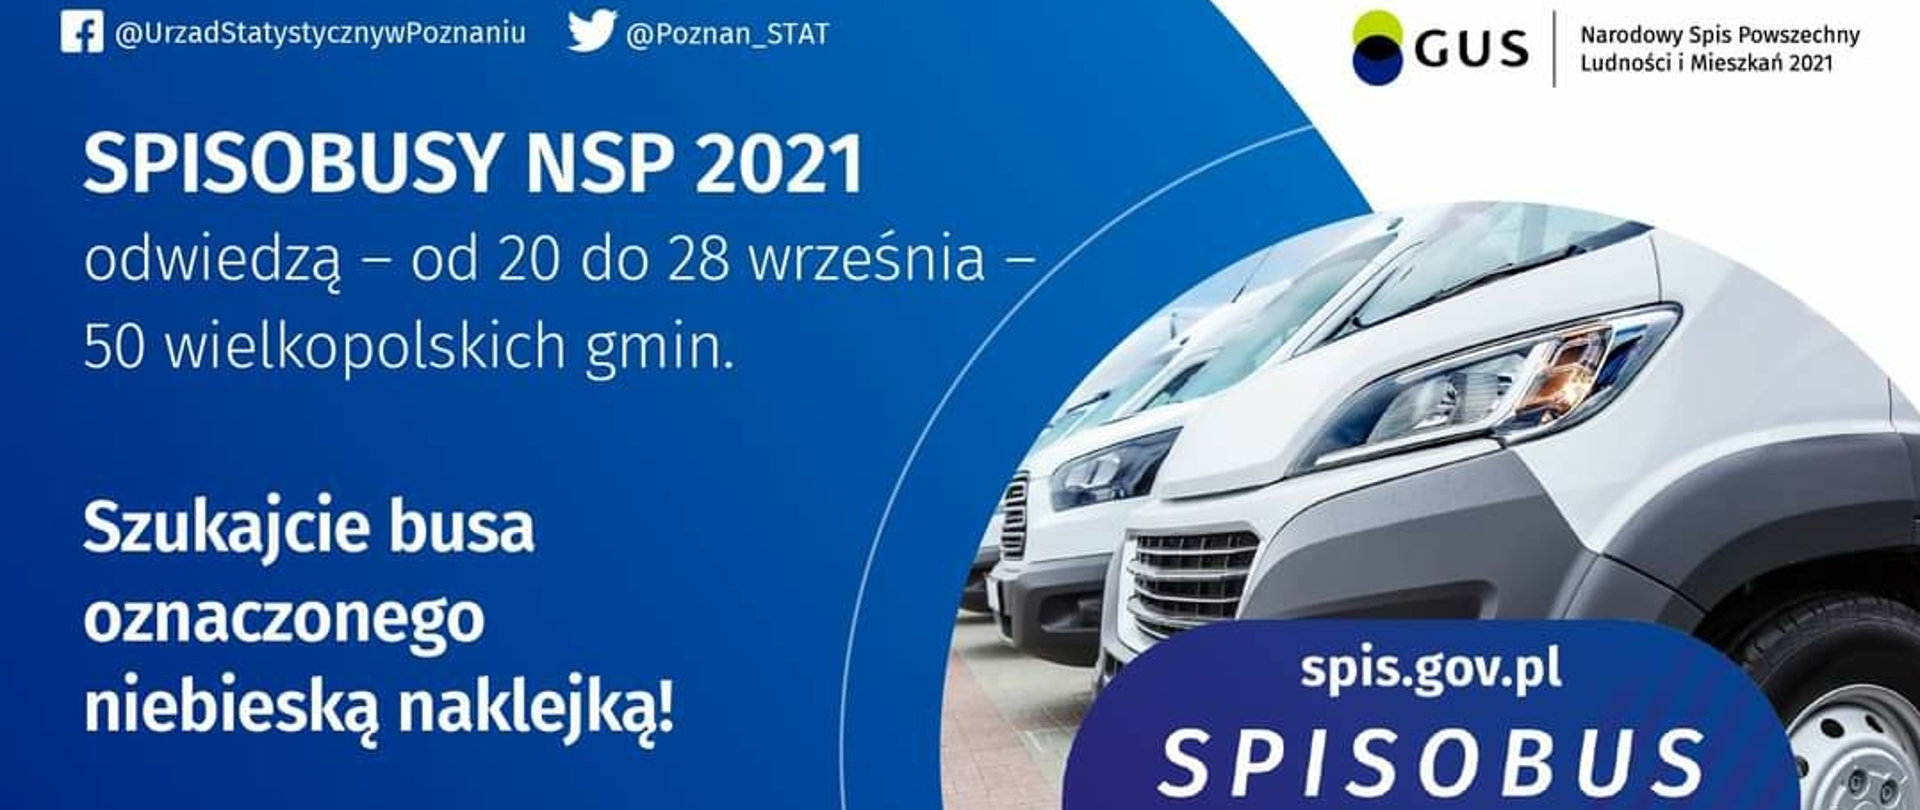 Spisobusy NSP 2021